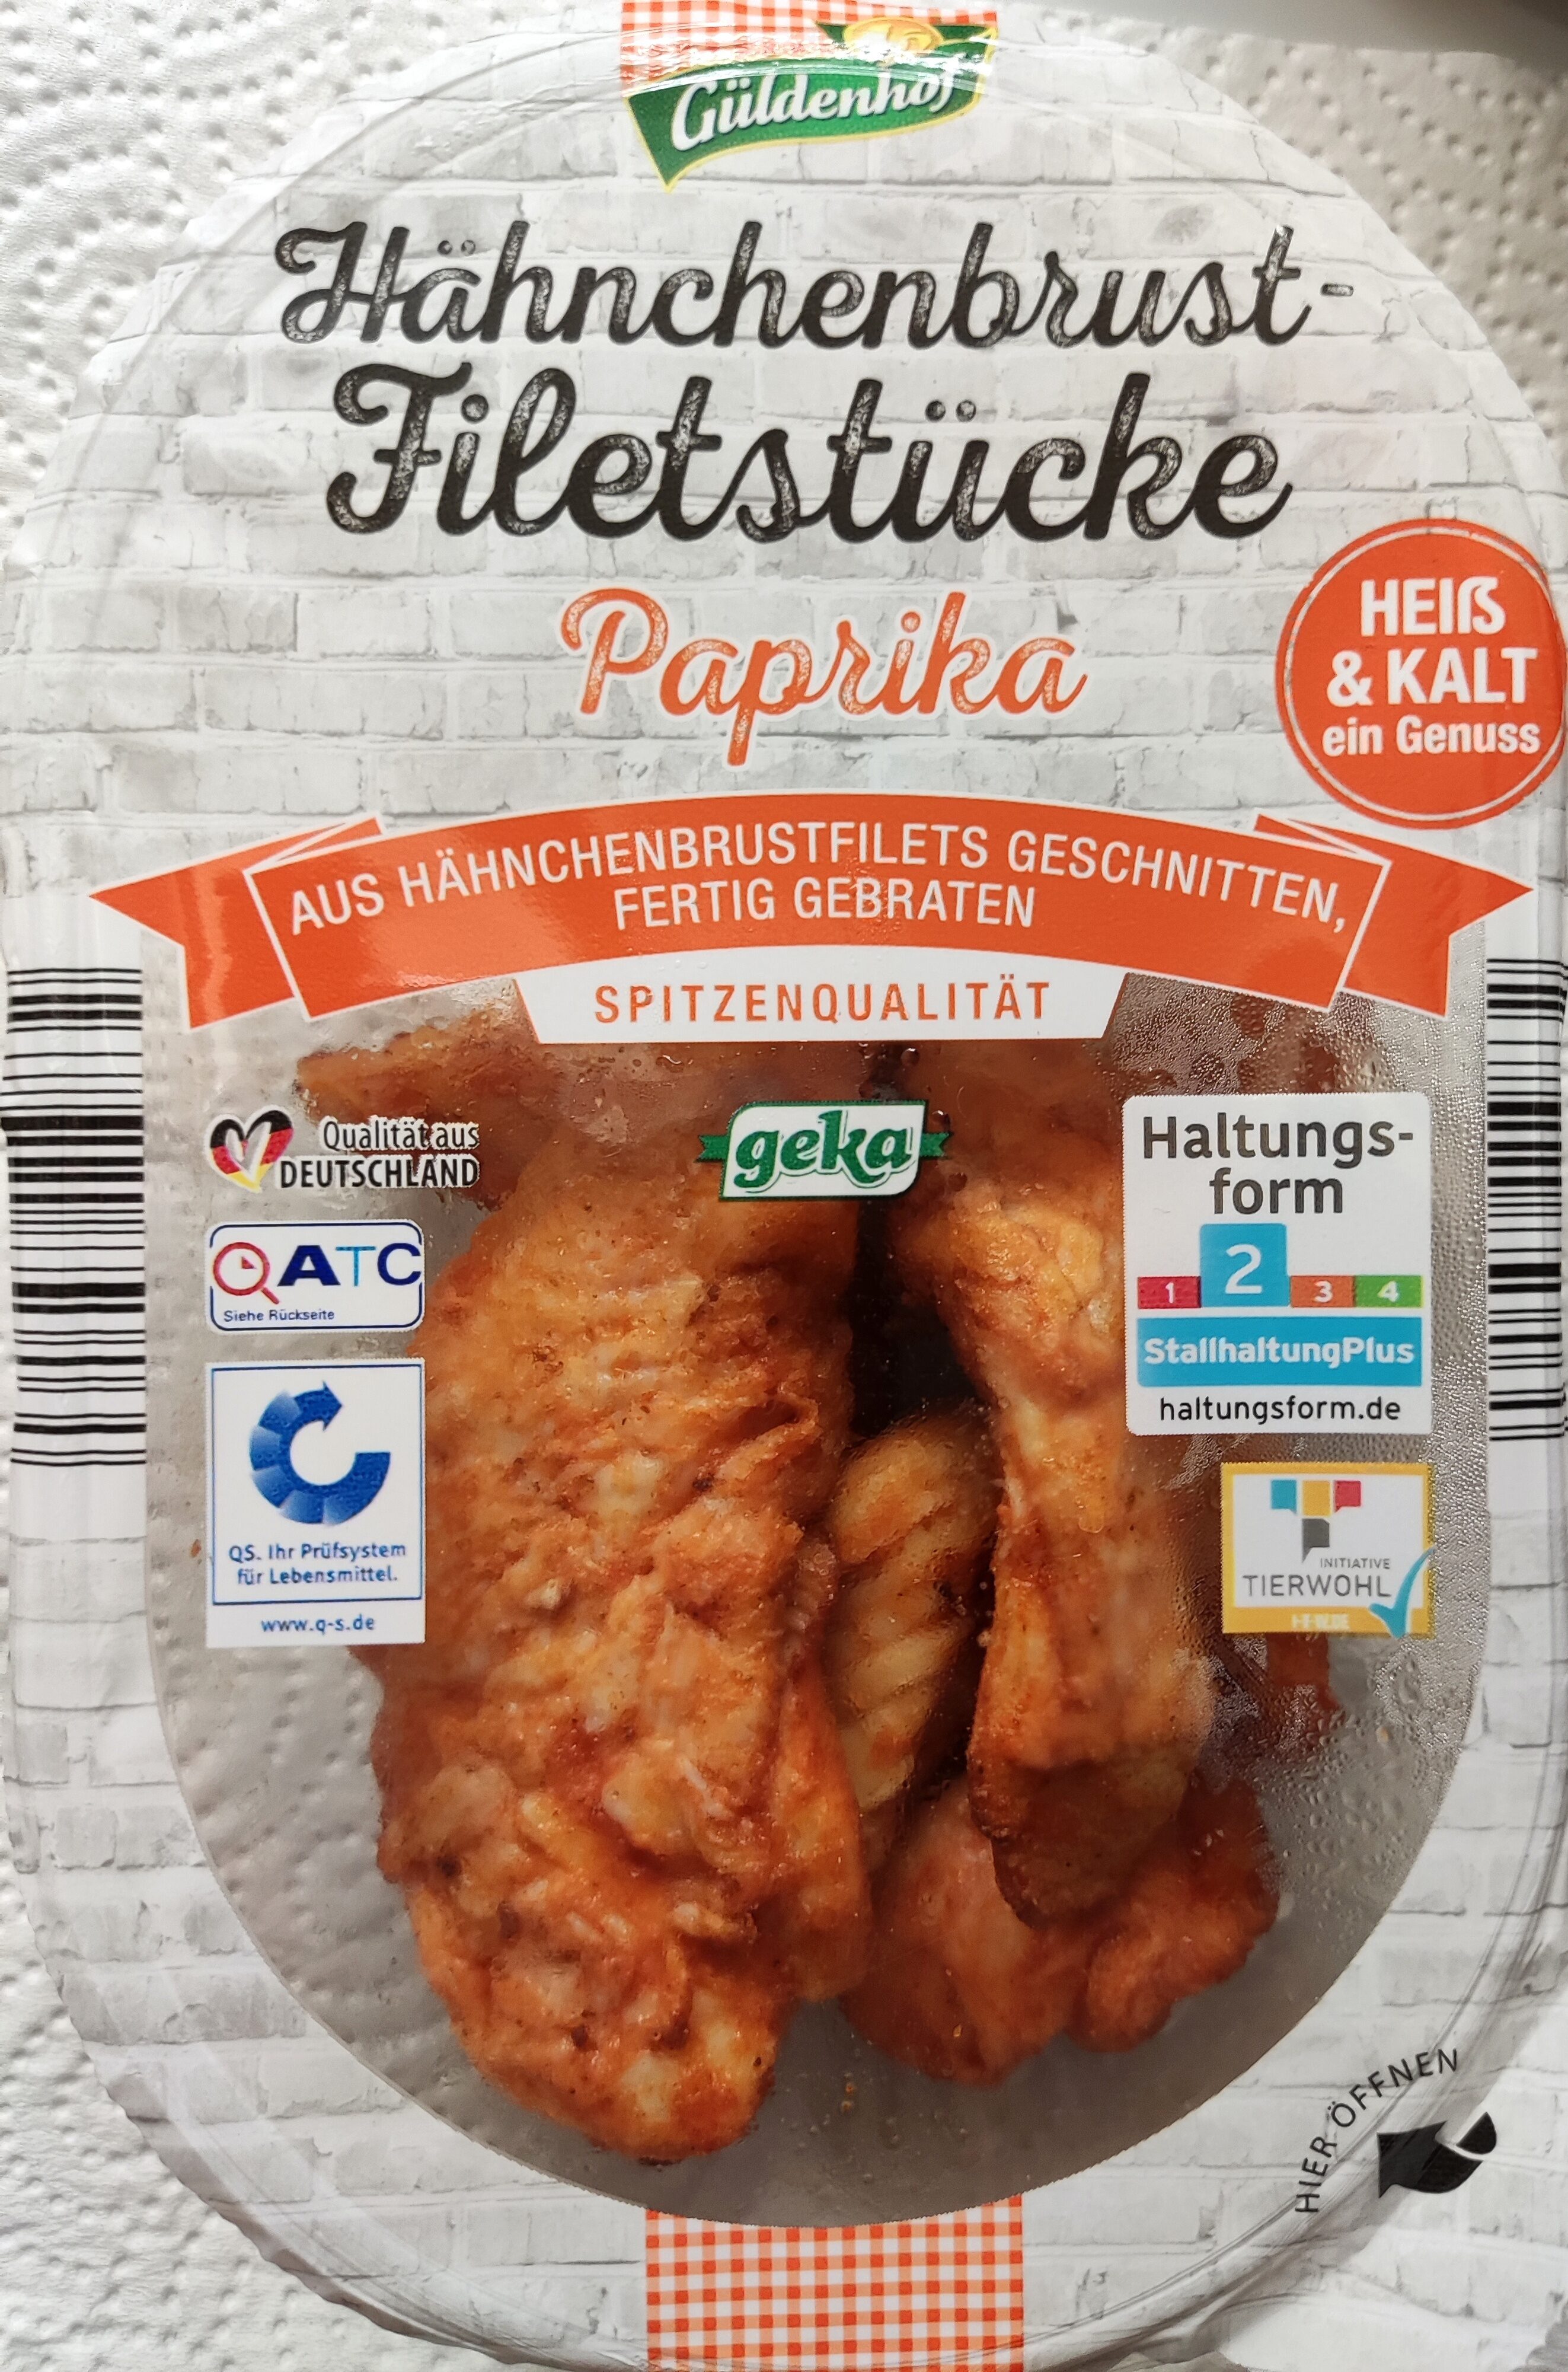 Hähnchenbrust-Filetstücke - Paprika - Produkt